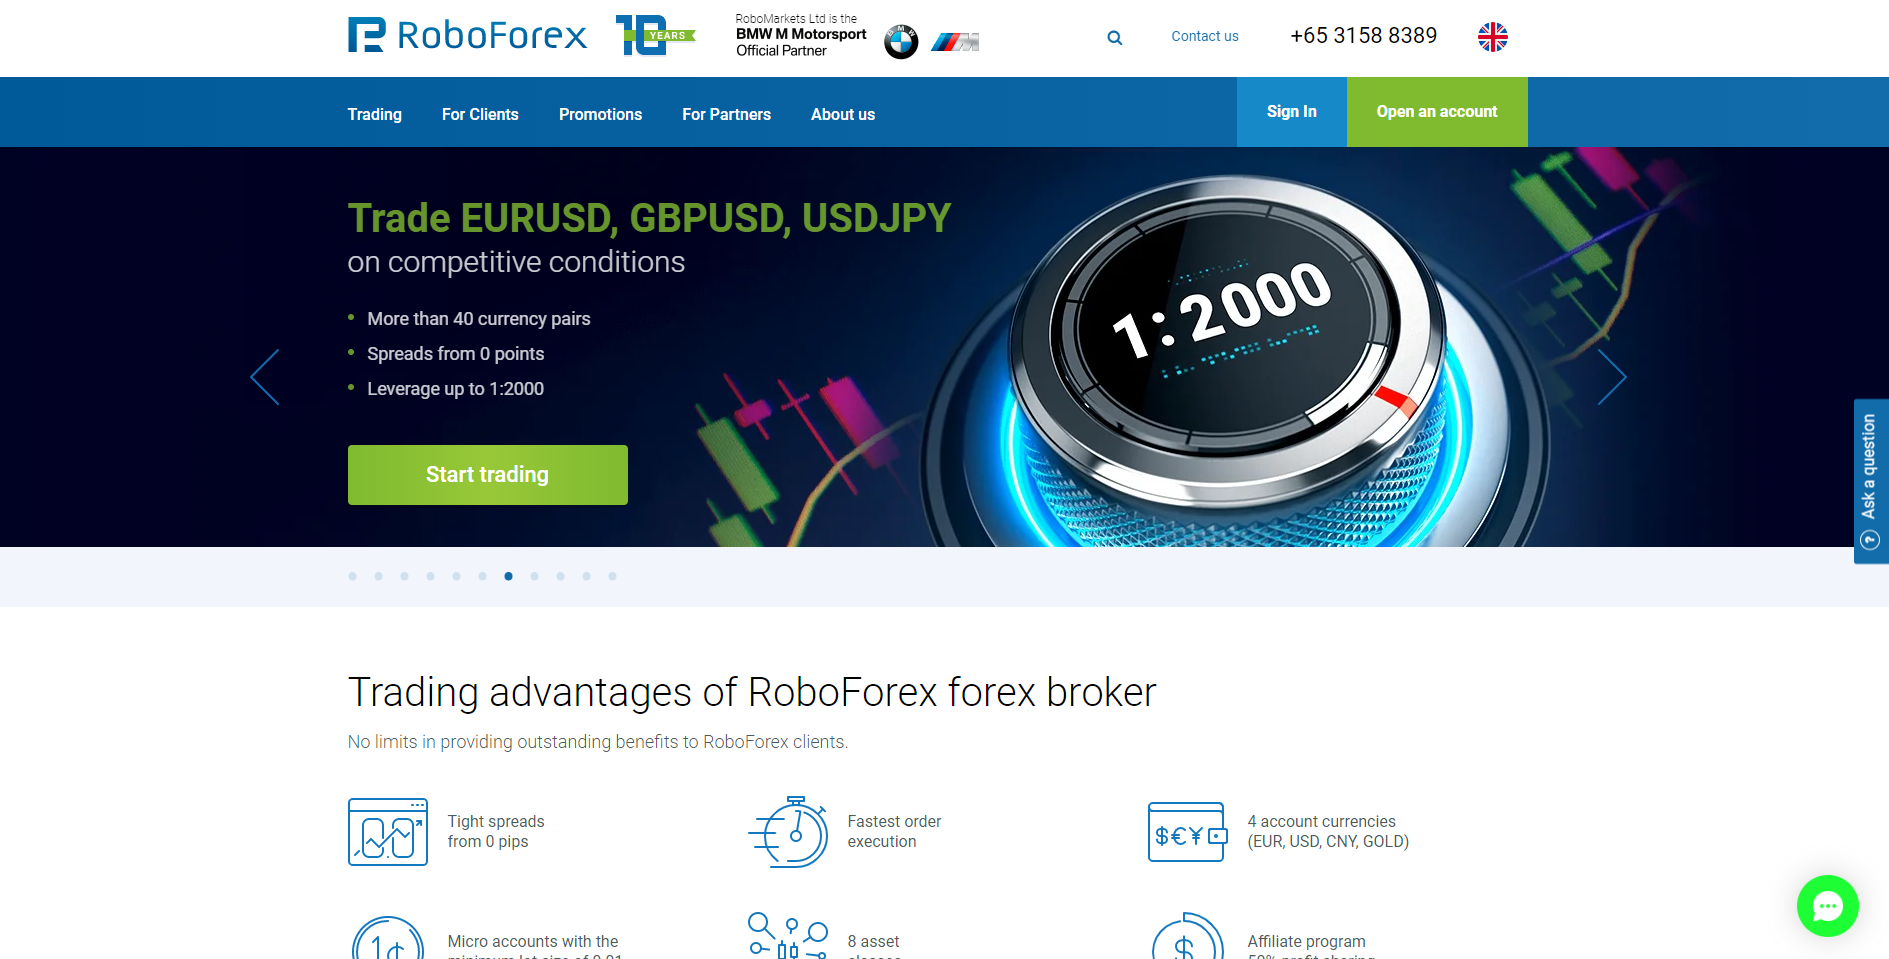 Il sito ufficiale del broker forex RoboForex